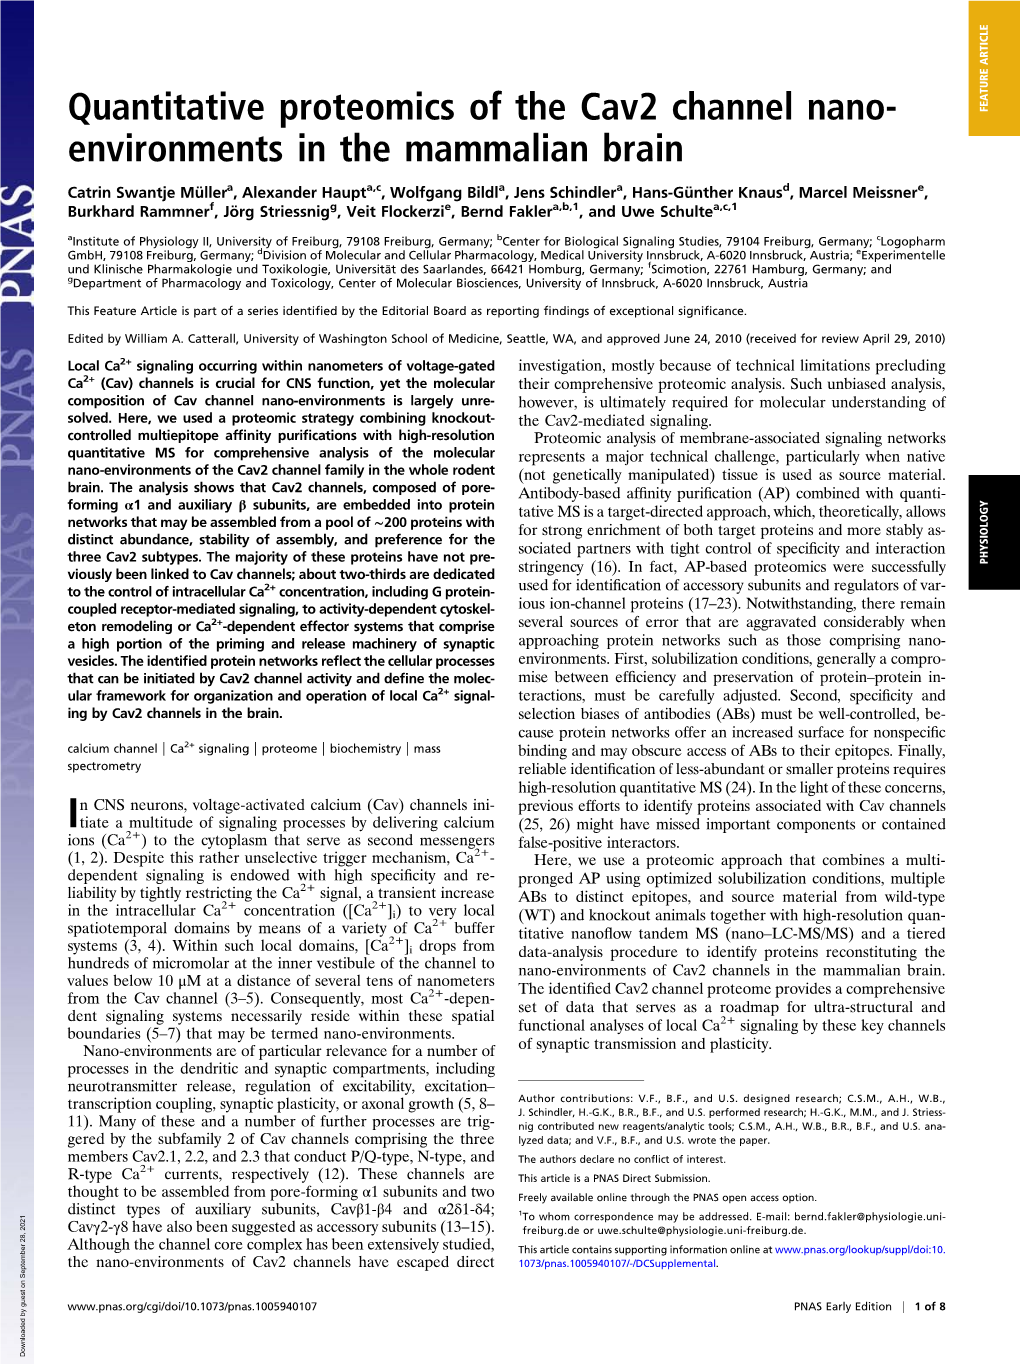 Quantitative Proteomics of the Cav2 Channel Nano- Environments in The